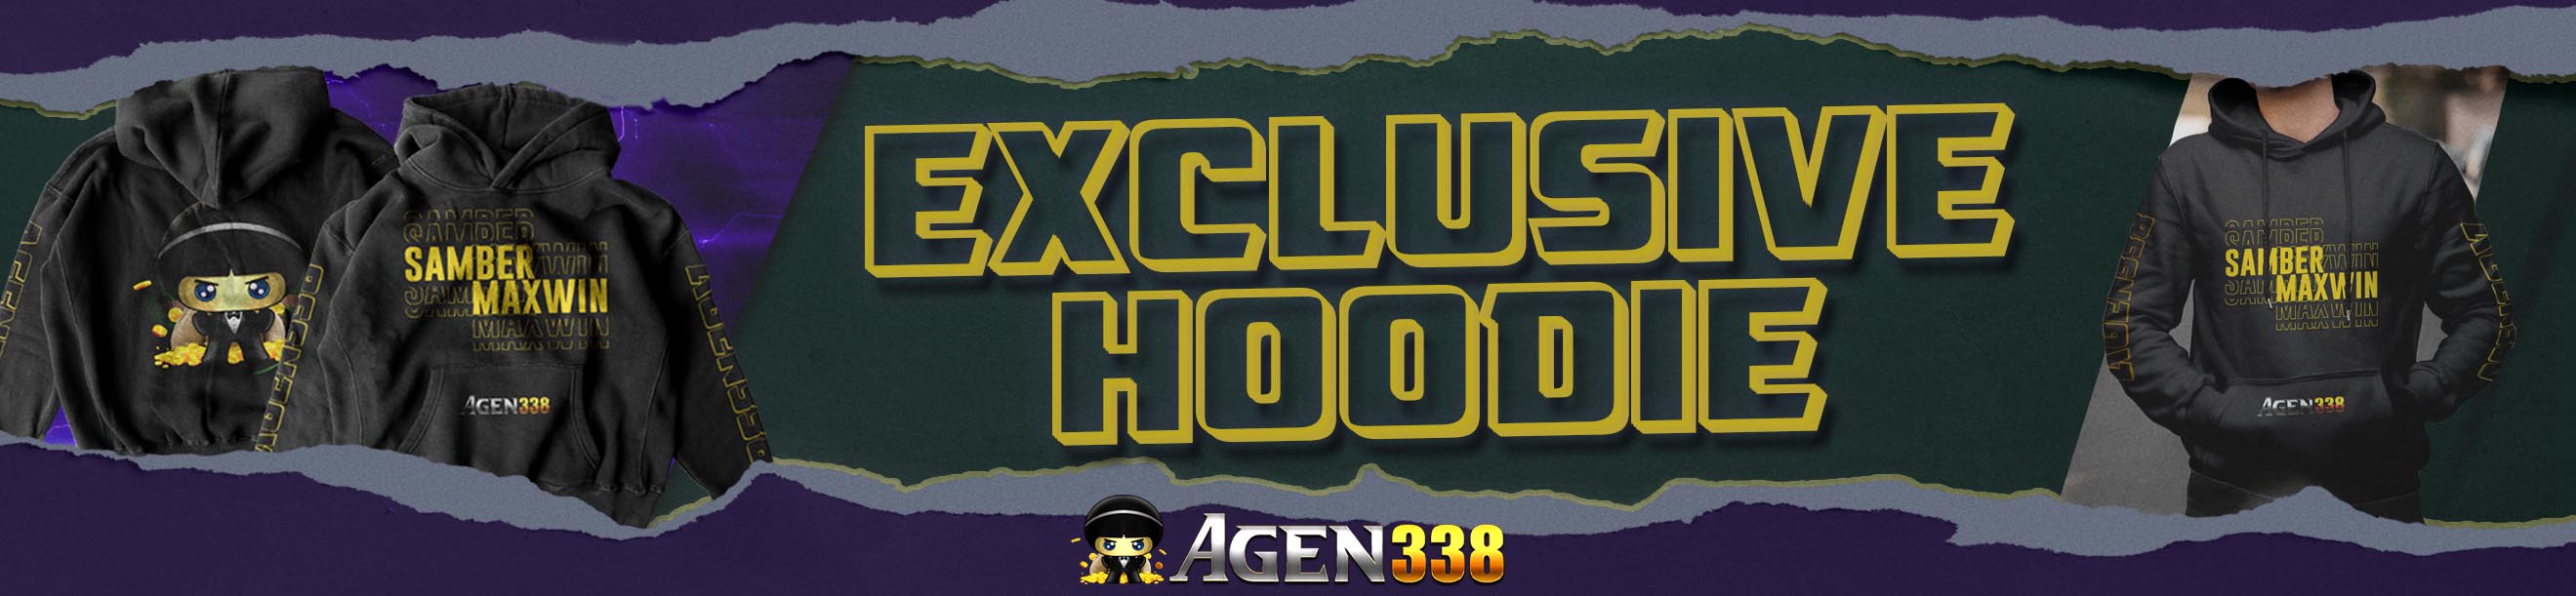 Hoodie Agen338